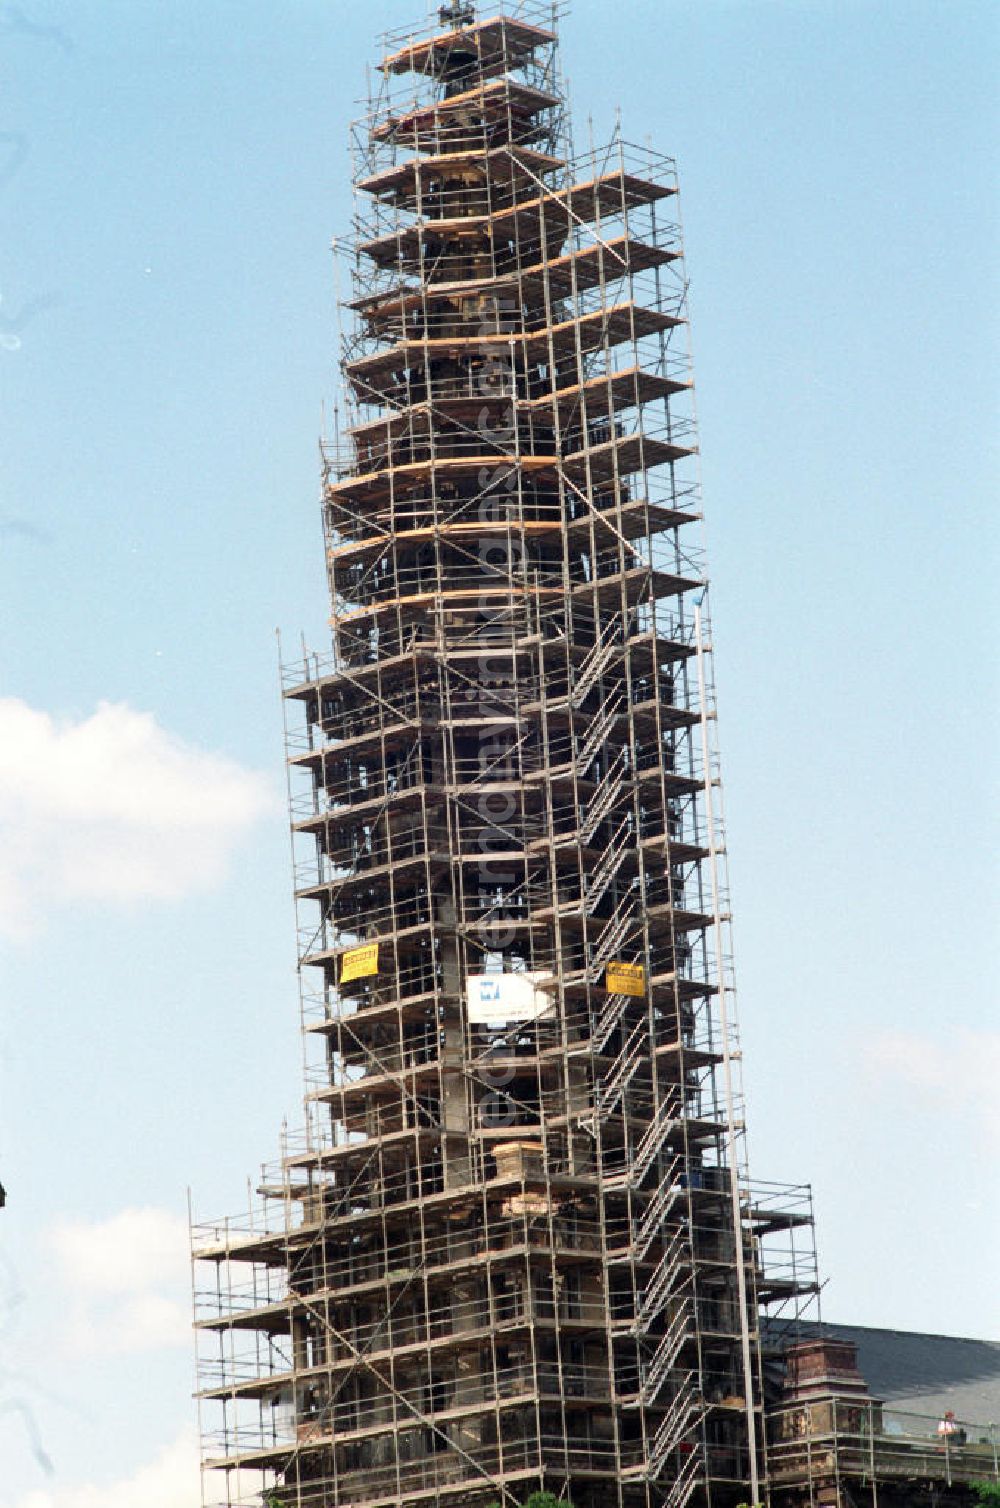 GDR picture archive: Berlin - Sanierungsarbeiten an der Zionskirche in Berlin-Mitte. Im Bild der eingerüstete Kirchturm.